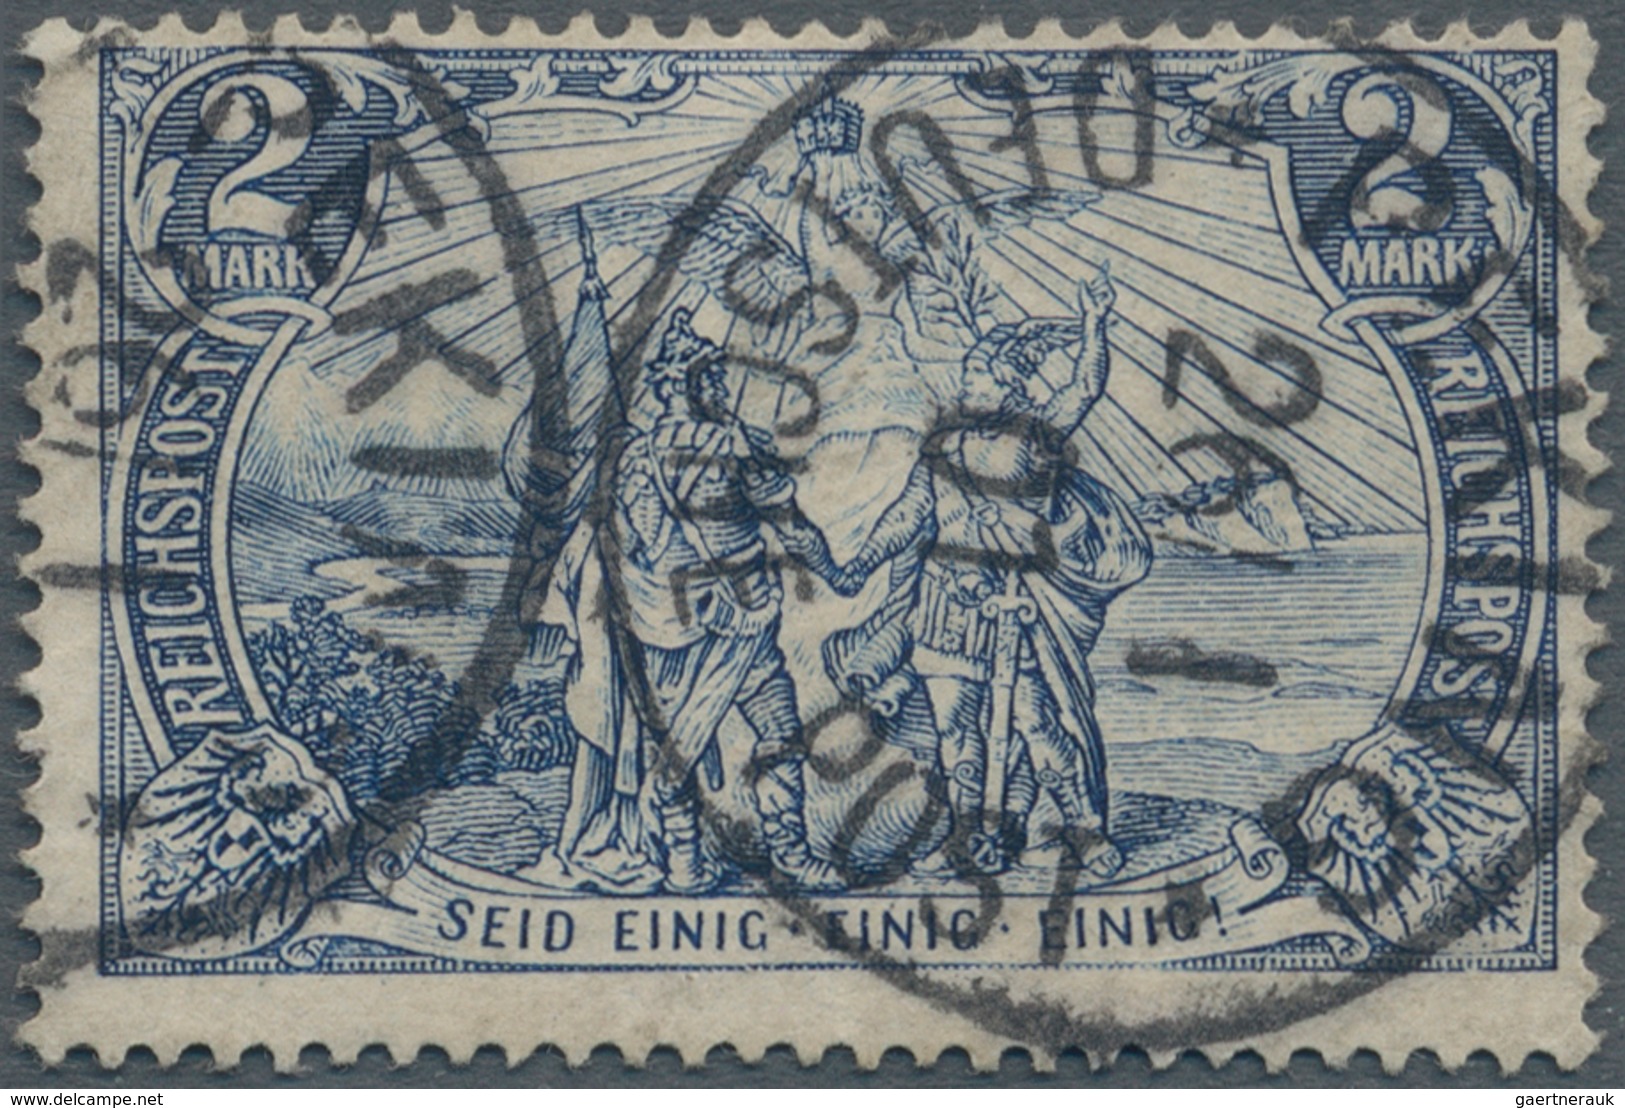 Deutsche Post In China: 1900 Petschili Germania Reichspost 2 Mark Schwarzblau, Type I, Sauber Und Kl - Deutsche Post In China